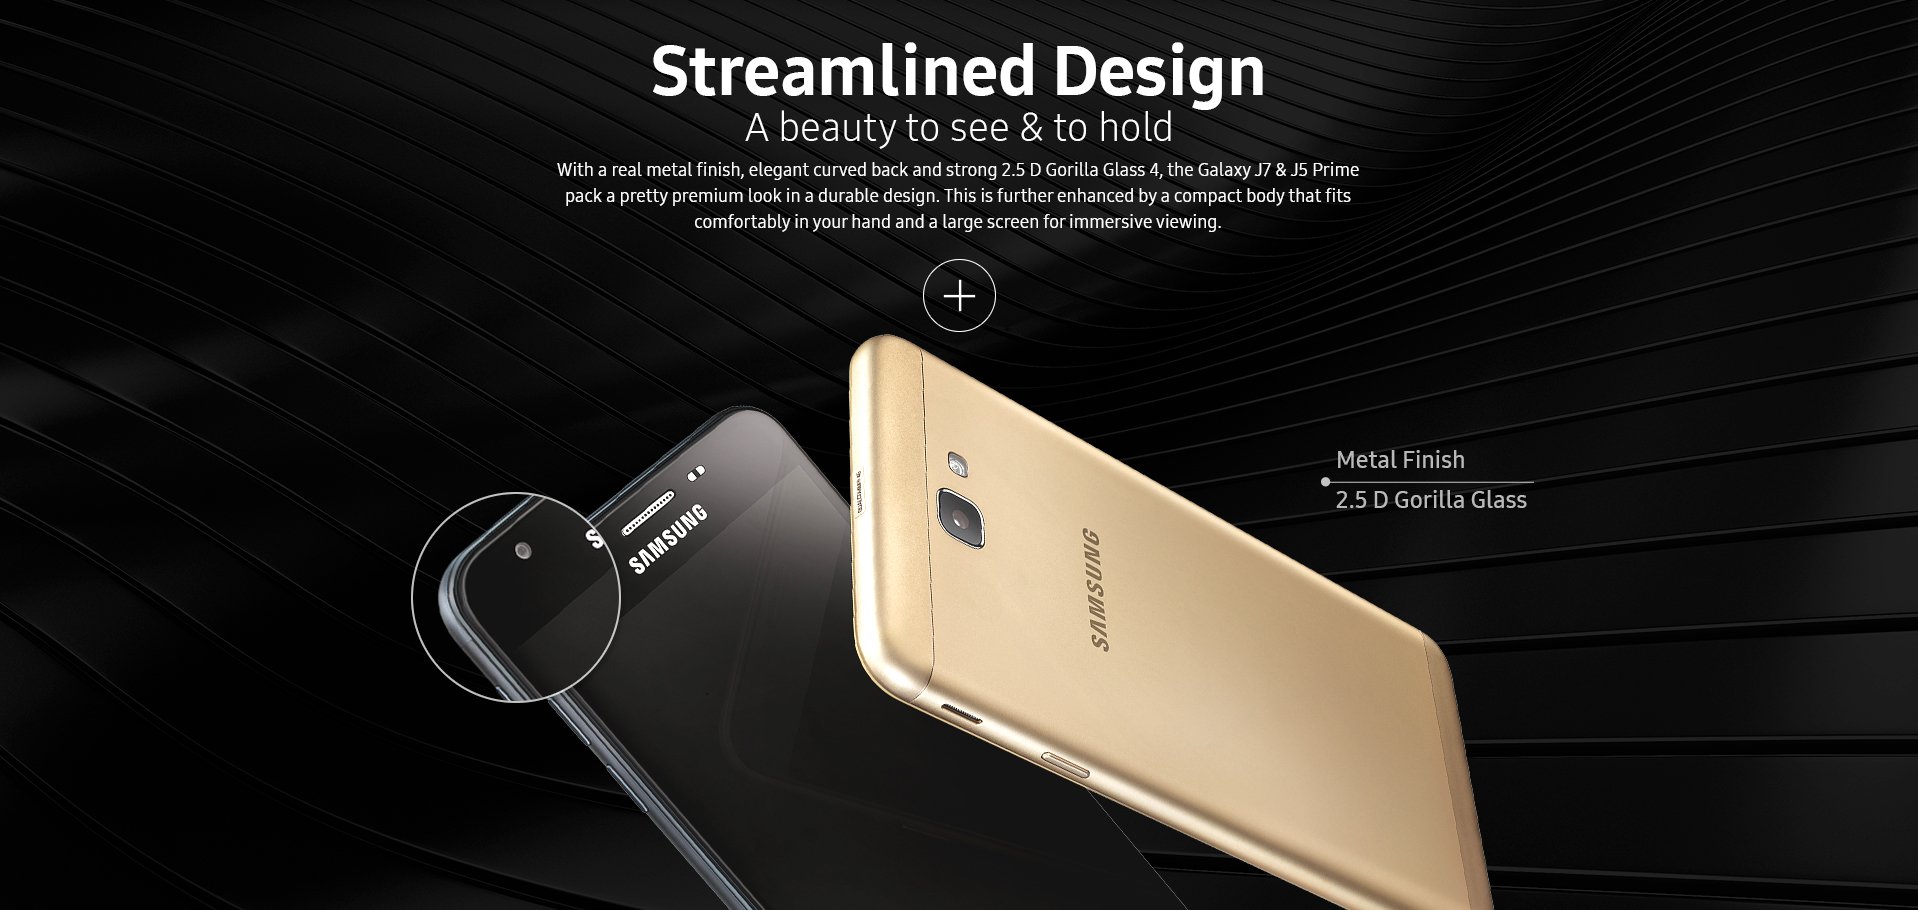 Samsung Galaxy J7 Prime características y especificaciones, analisis,  opiniones - PhonesData